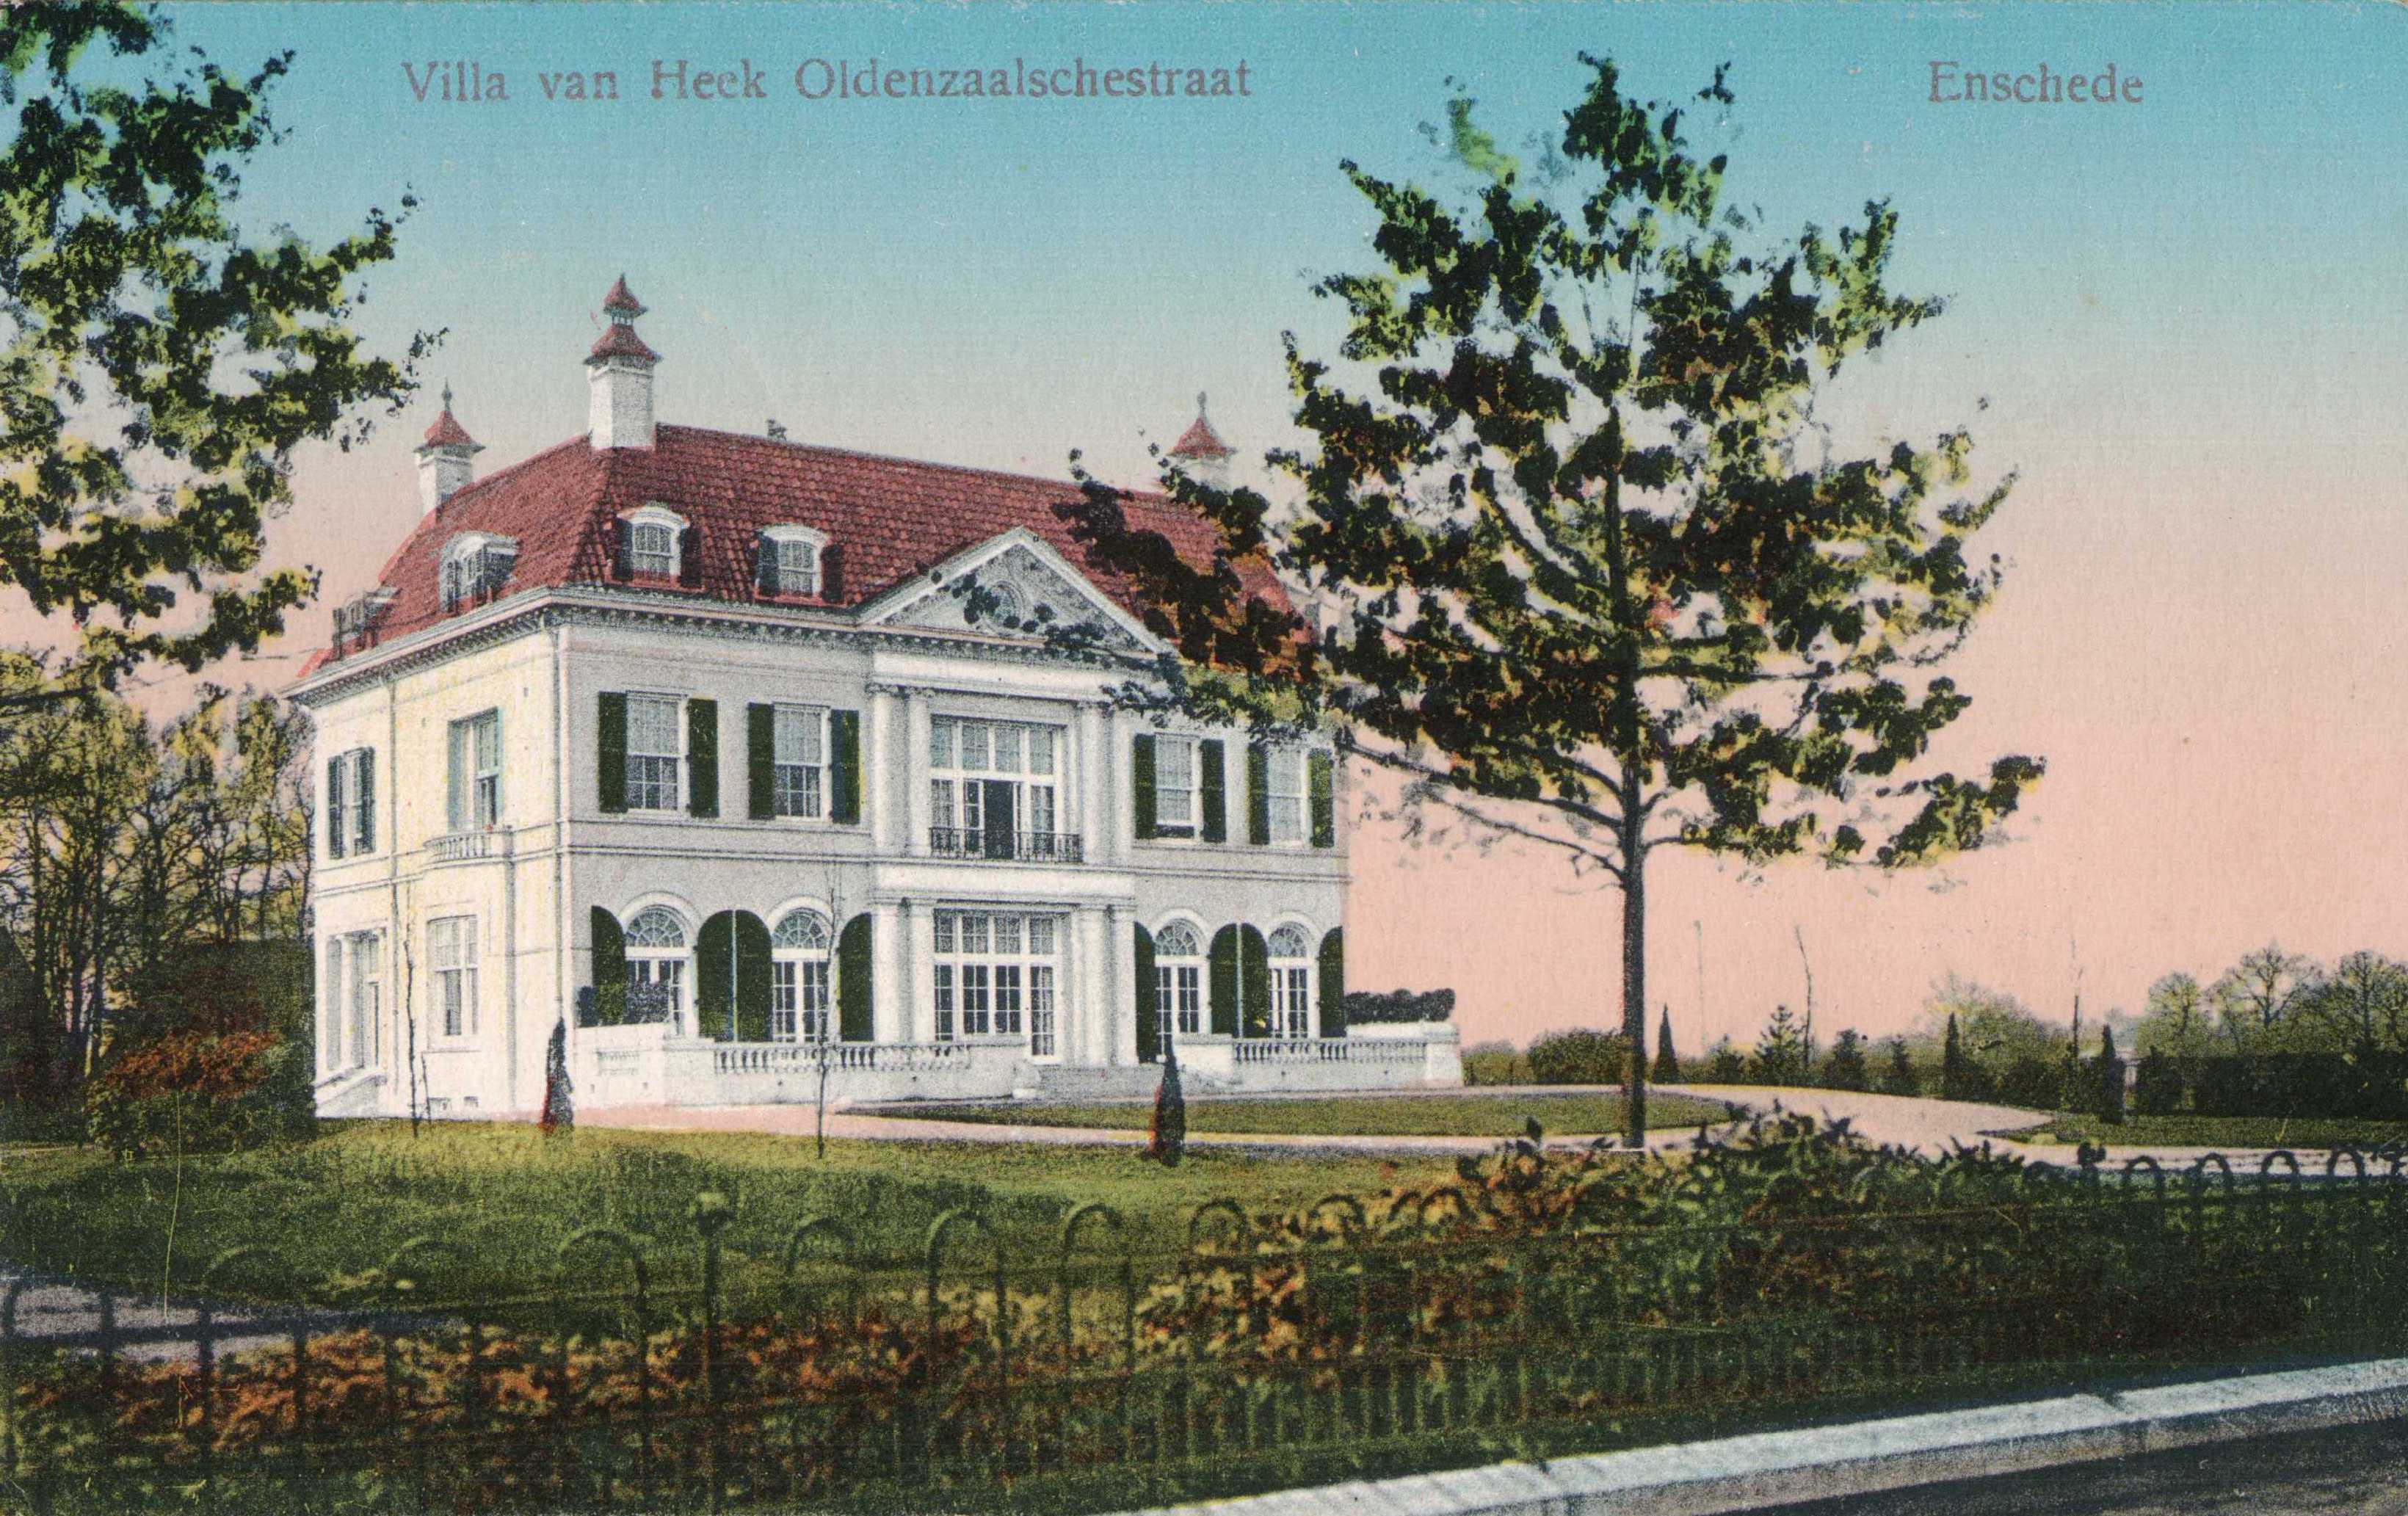 Villa-van-heek-oldenzaalsestraat-1924-68027c76.jpg